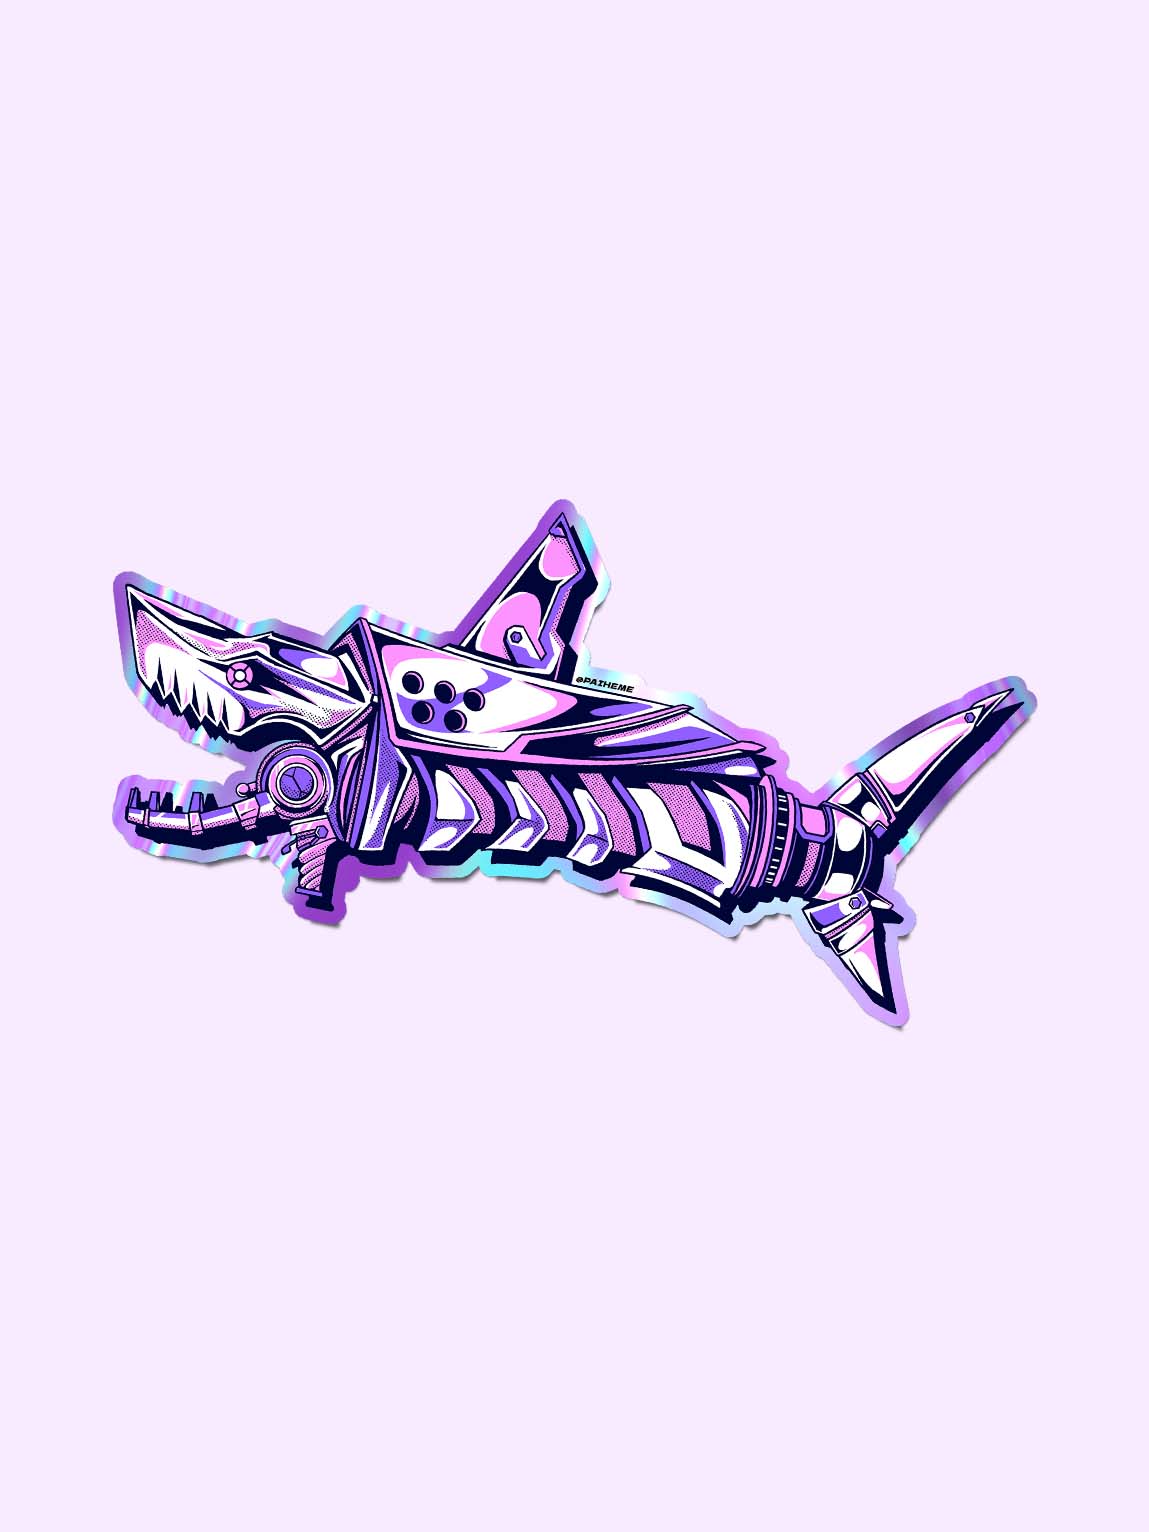 SHARK GUN Sticker 💣